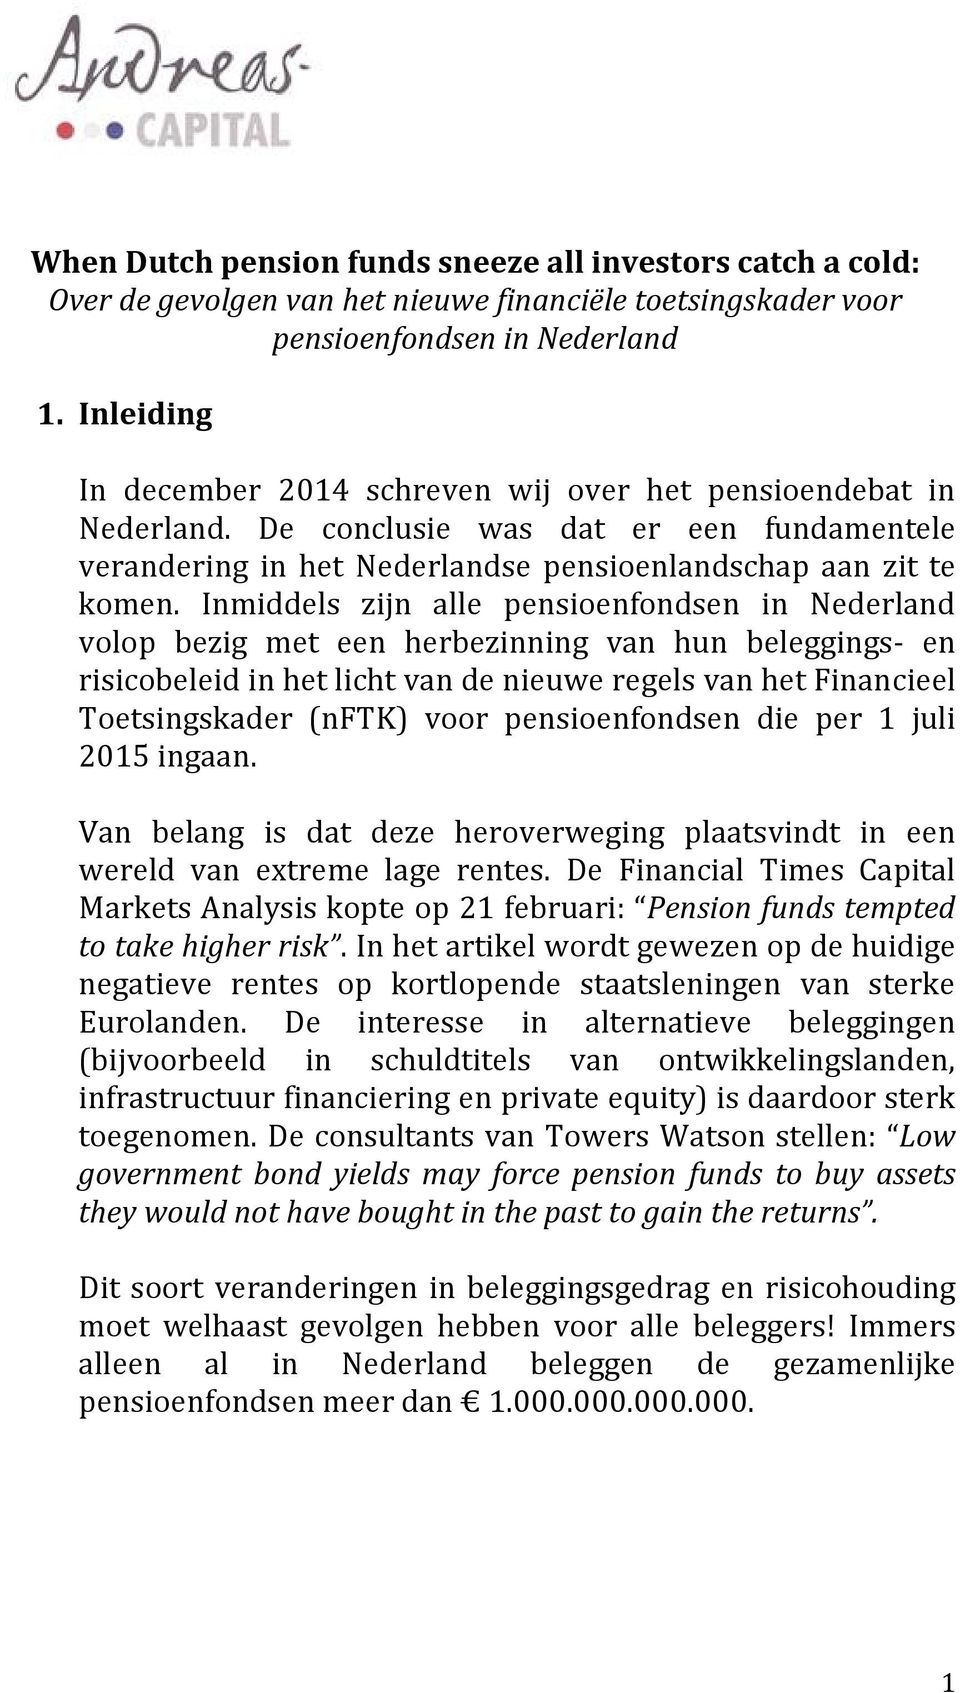 Inmiddels zijn alle pensioenfondsen in Nederland volop bezig met een herbezinning van hun beleggings- en risicobeleid in het licht van de nieuwe regels van het Financieel Toetsingskader (nftk) voor